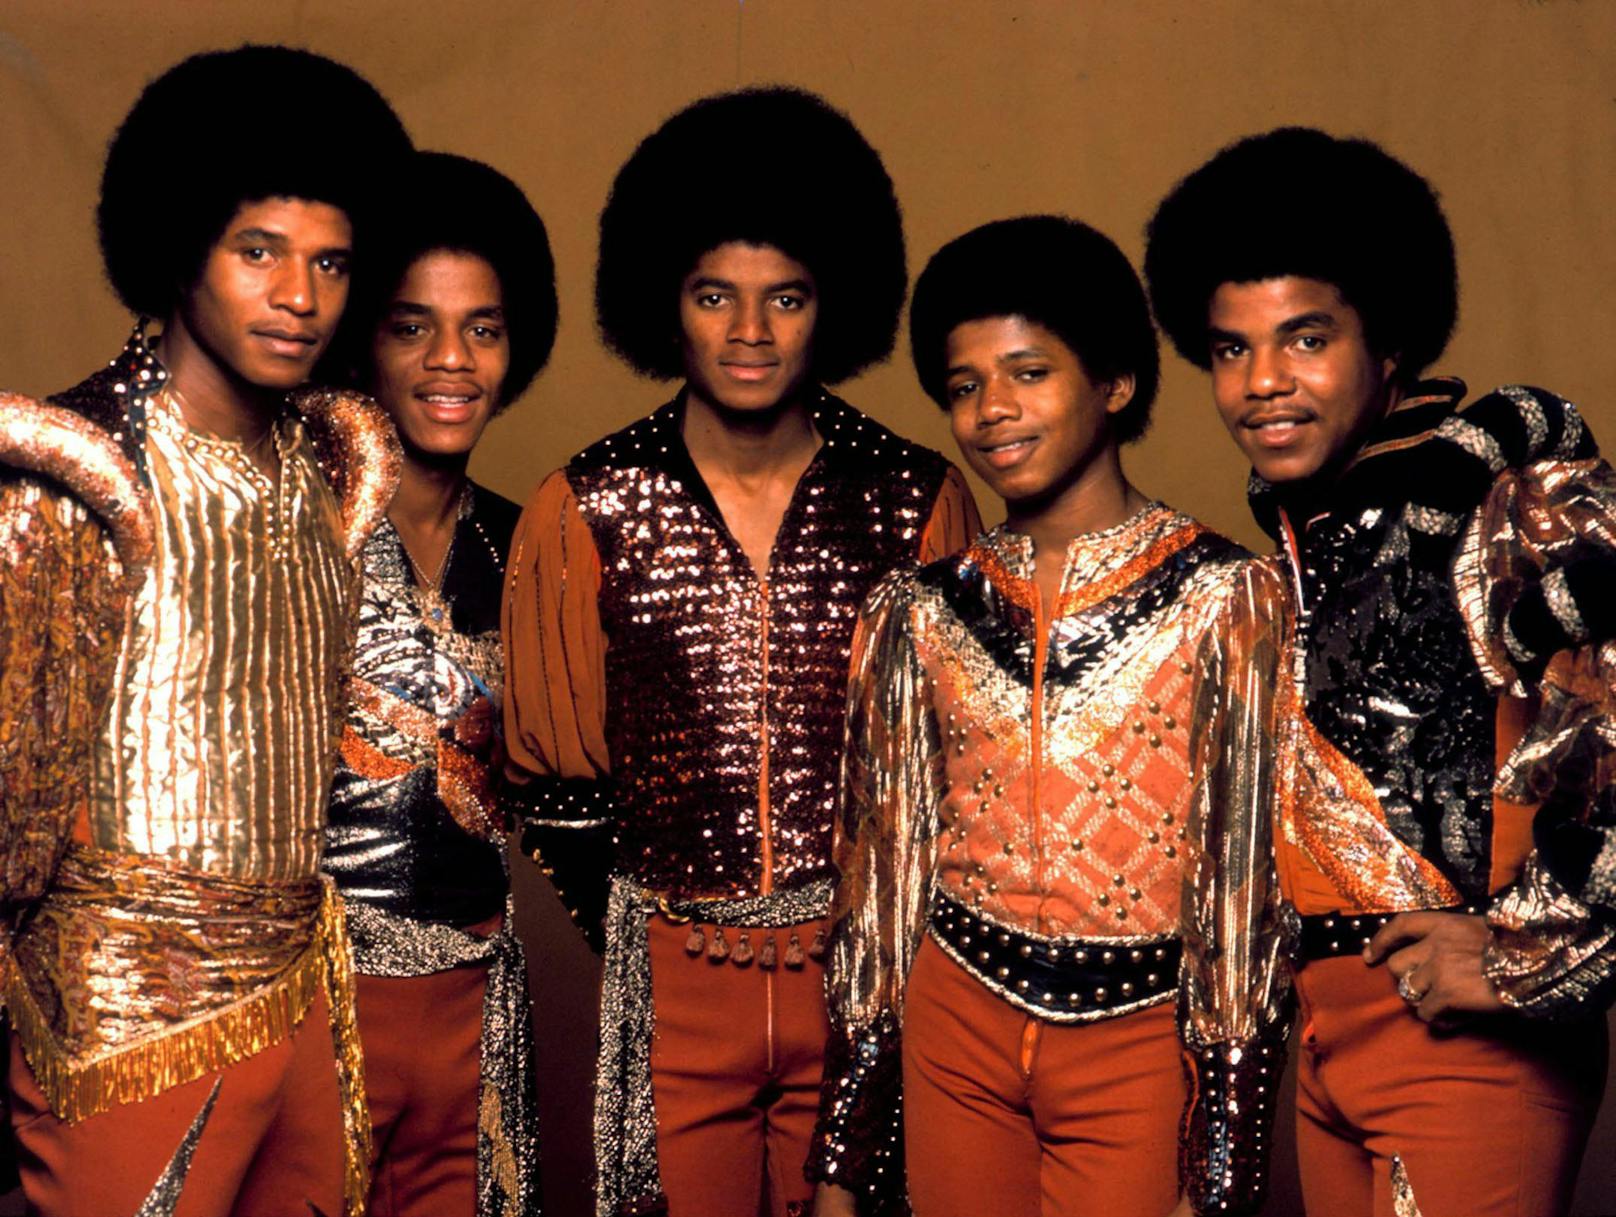 Die "Jackson 5", eine von den Brüdern Michael, Jermaine, Tito, Jackie und Marlon Jackson gegründete Band, stiegen in den späten 1960er Jahren zu Ruhm auf. Mit Hits wie "I Want You Back", "ABC" und "I'll Be There" eroberten sie die Charts.